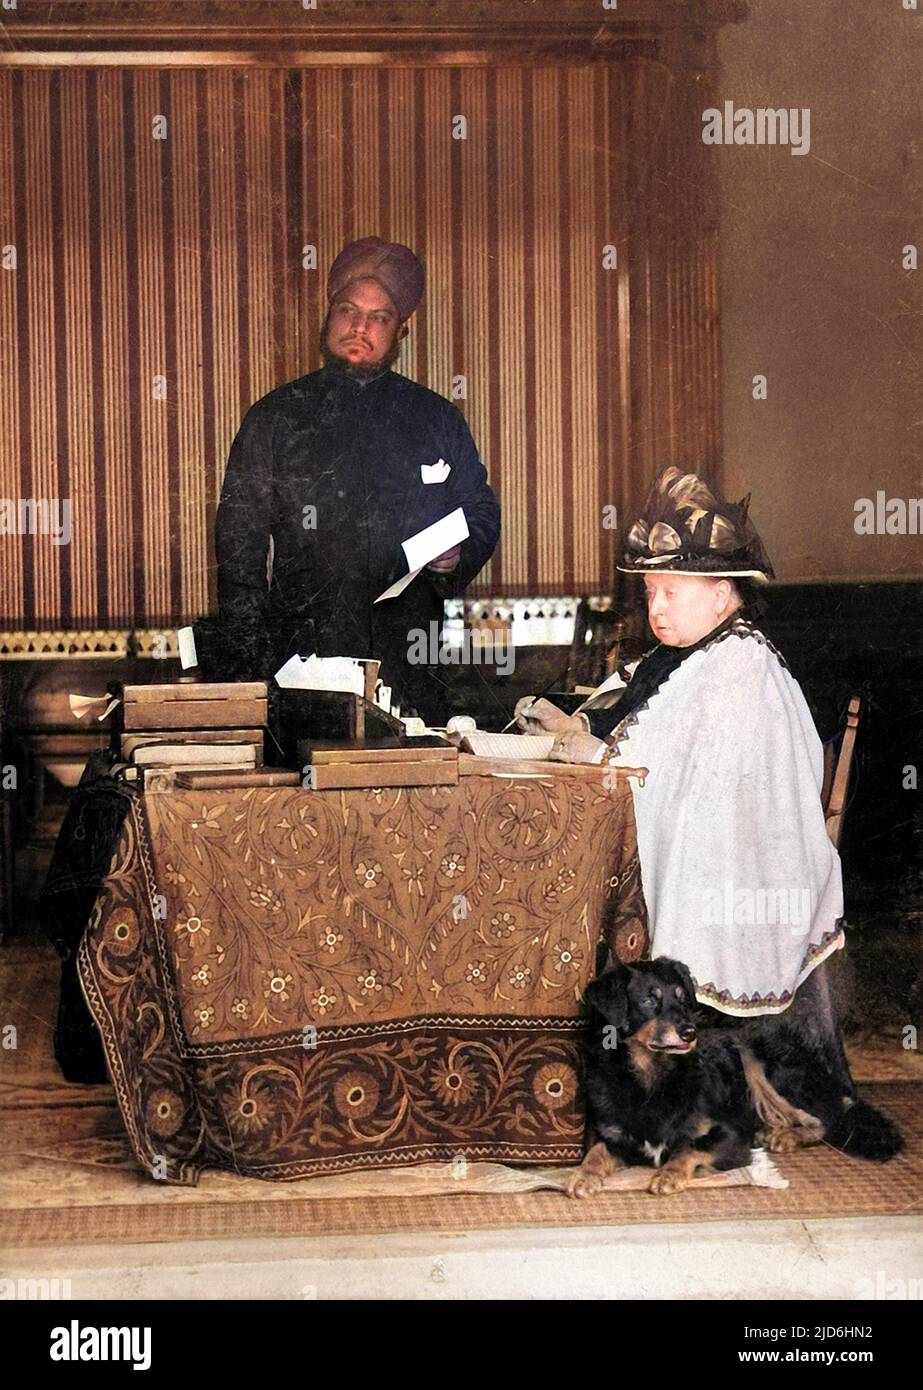 Königin Victoria (1819 - 1901), von Großbritannien und Irland und Kaiserin von Indien, abgebildet am Schreibtisch. Ihr indischer Diener Abdul Karim, auch bekannt als die 'Munshi', steht im Hintergrund. Kolorierte Version von: 10220925 Datum: 1897 Stockfoto